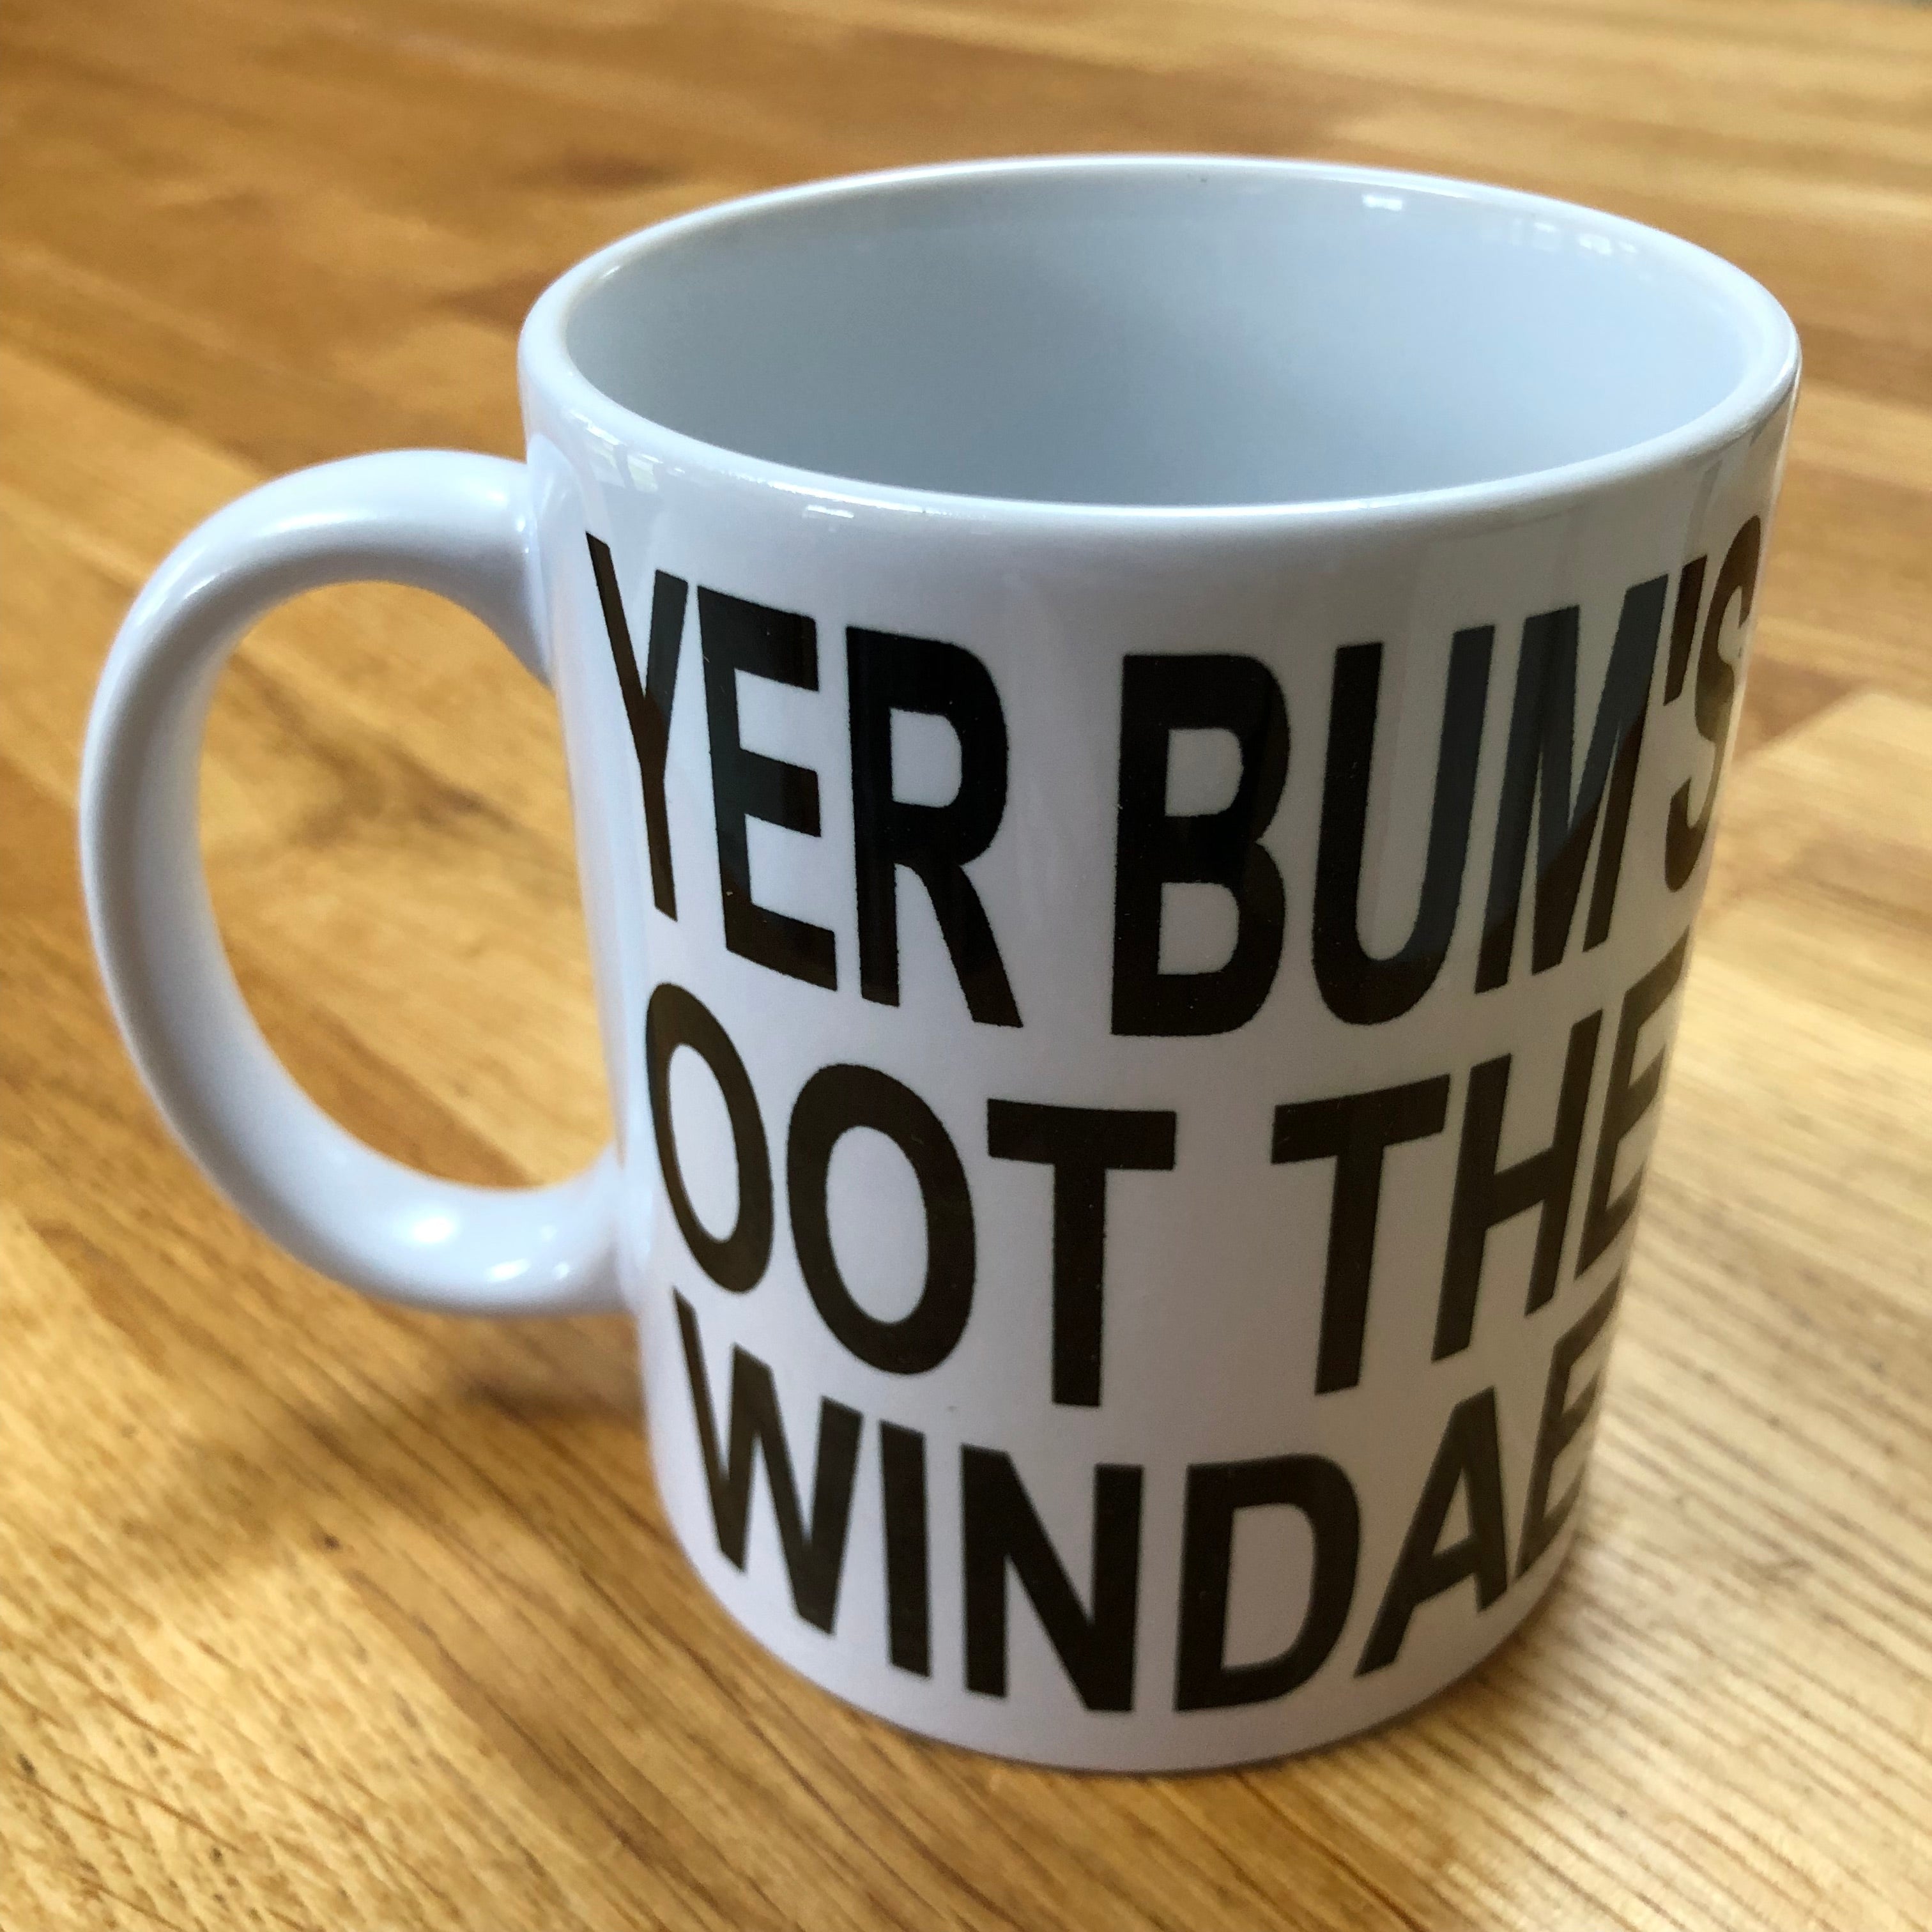 Ceramic mug - Scottish dialect - yer bum's oot the windae